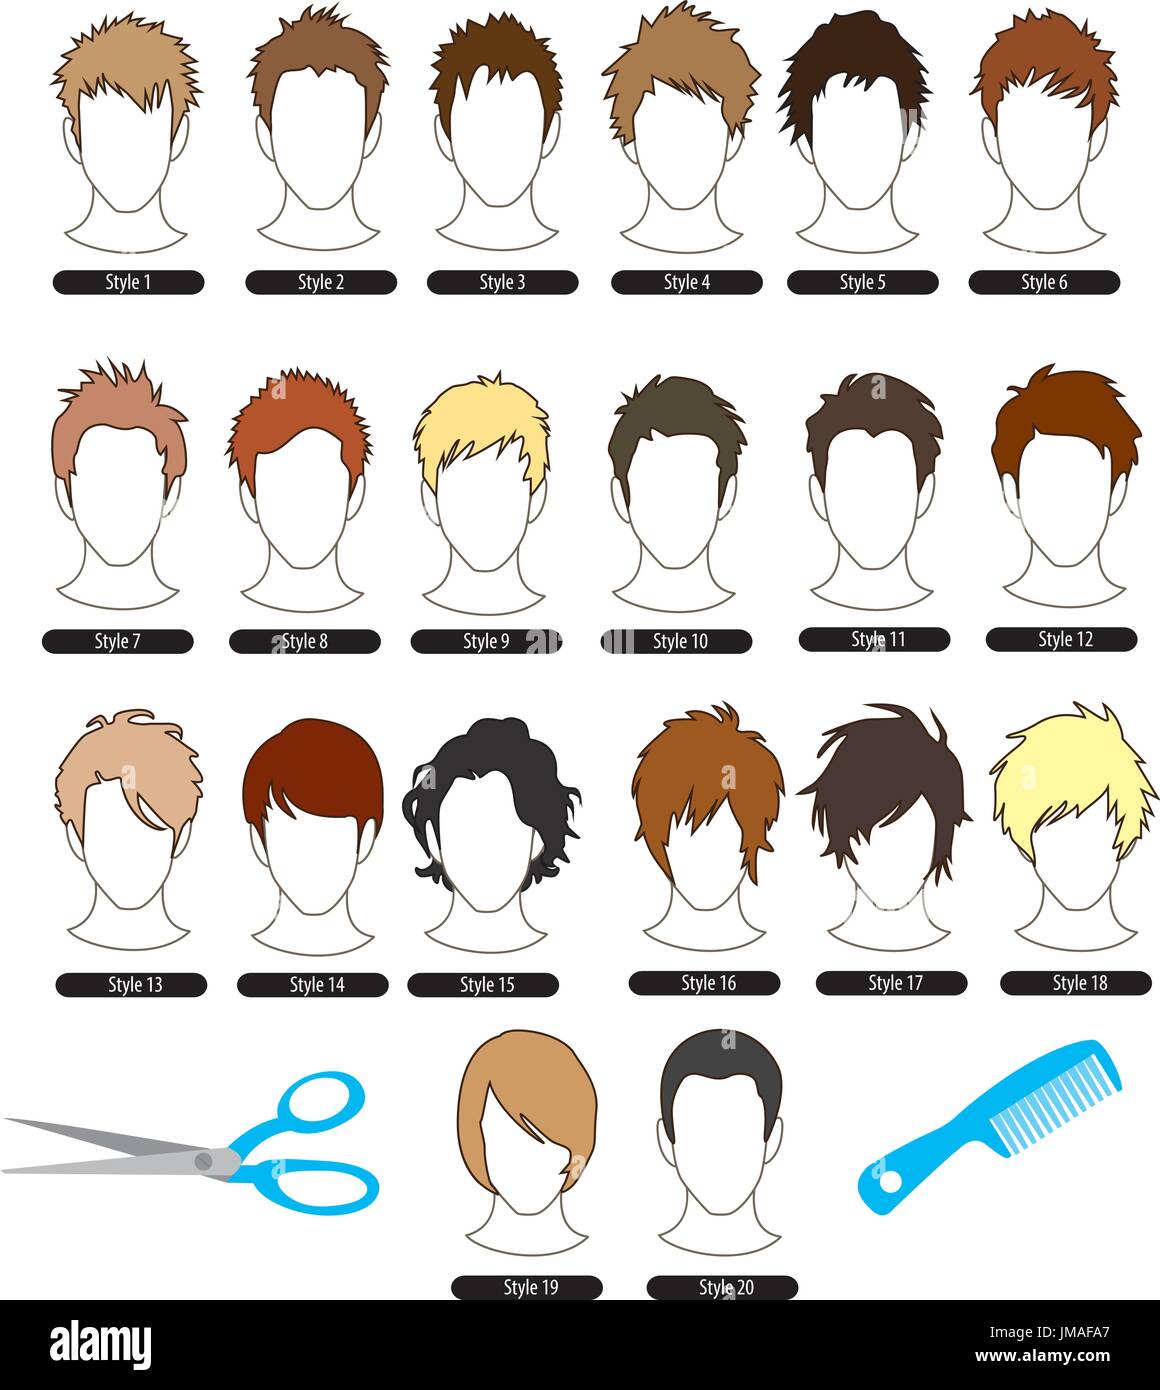 Men's Hairstyles in vector Stock Vector Image & Art - Alamy